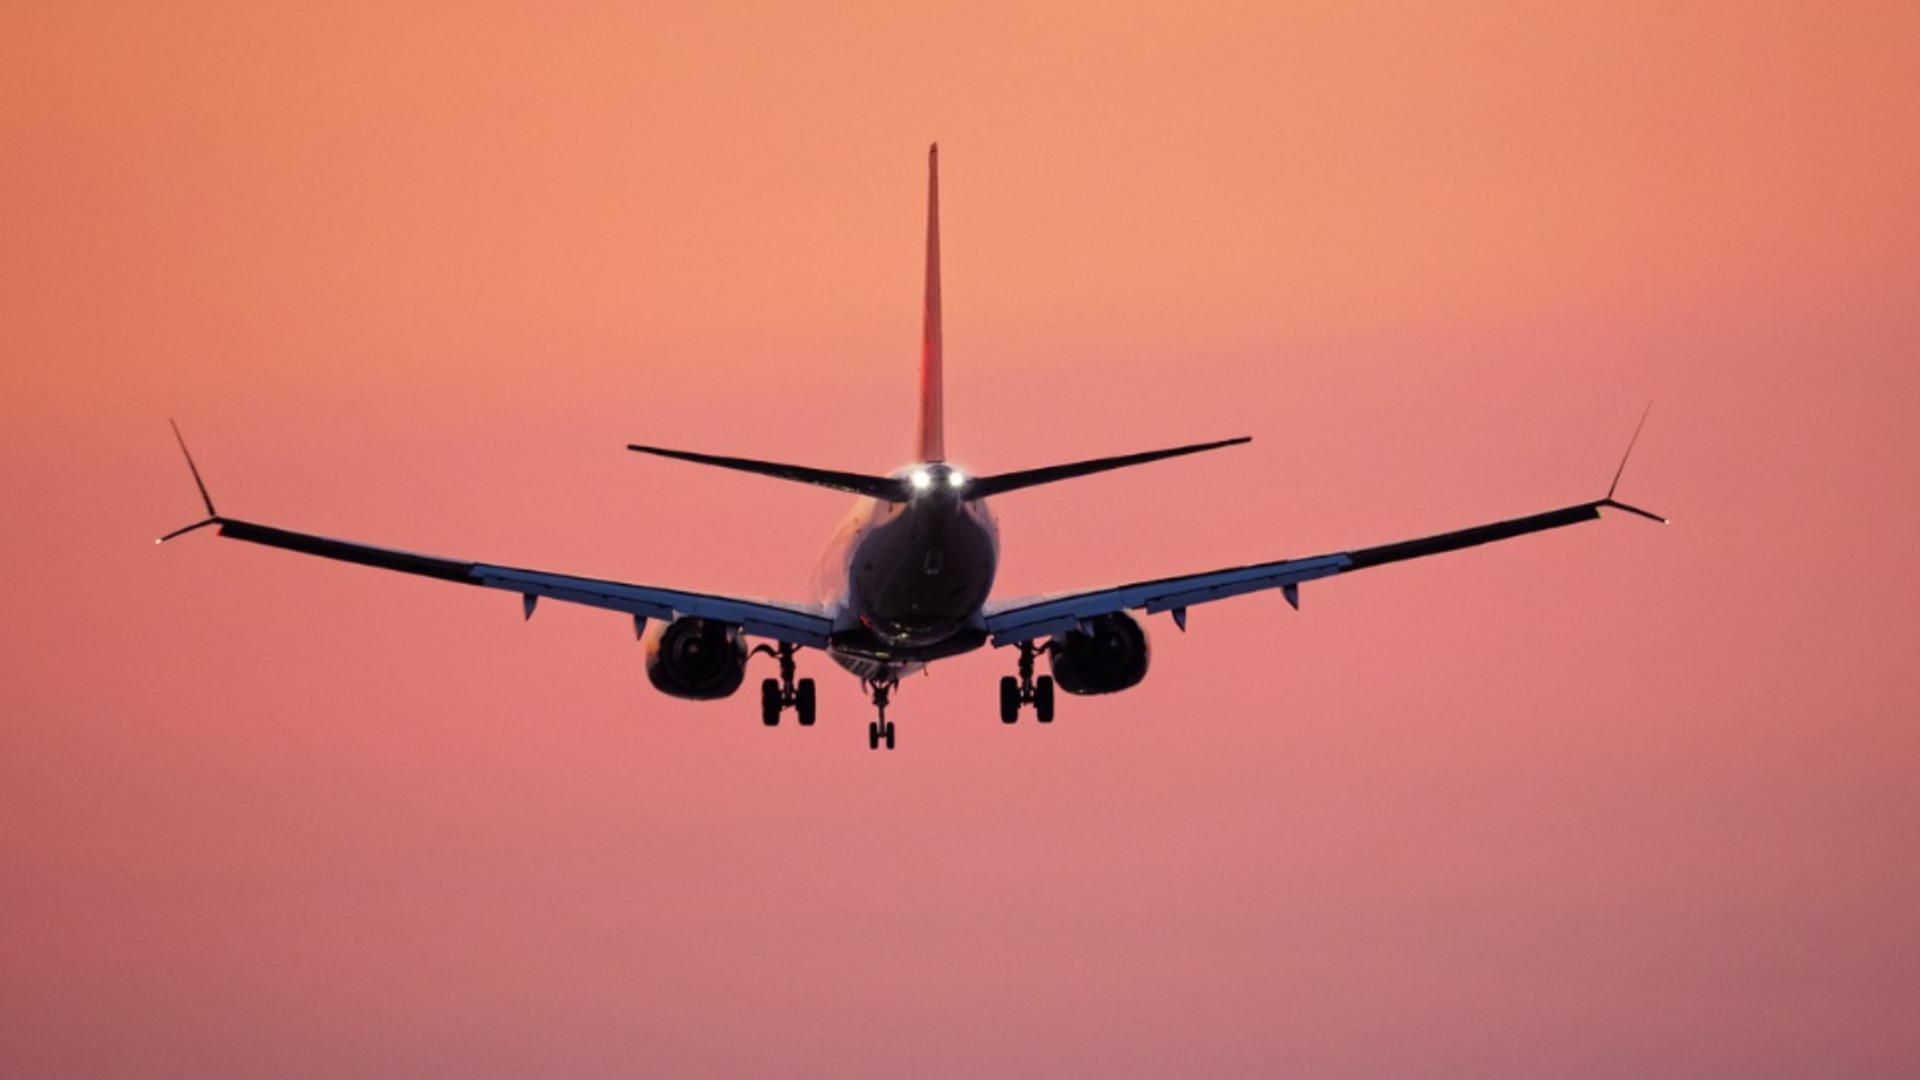 Unul dintre geamuri unui avion s-a spart în timpul zborului! Momente de panică printre pasageri – VIDEO